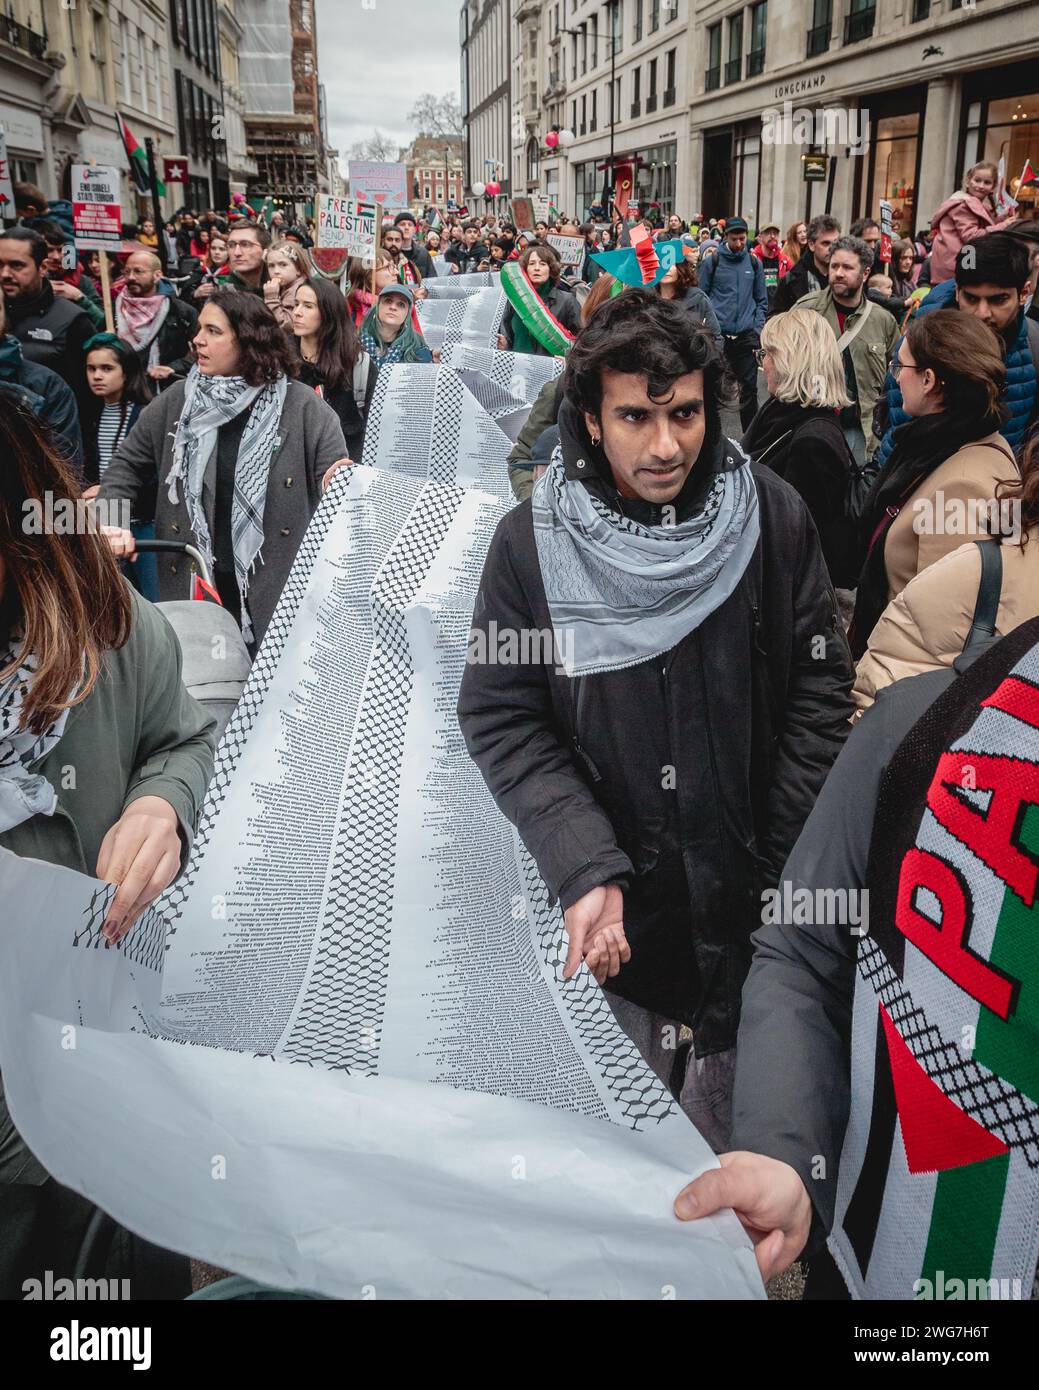 Pro-palästinensische Anhänger marschieren in London mit einer langen Liste von Palästinensern, die seit dem Konflikt getötet wurden. Stockfoto